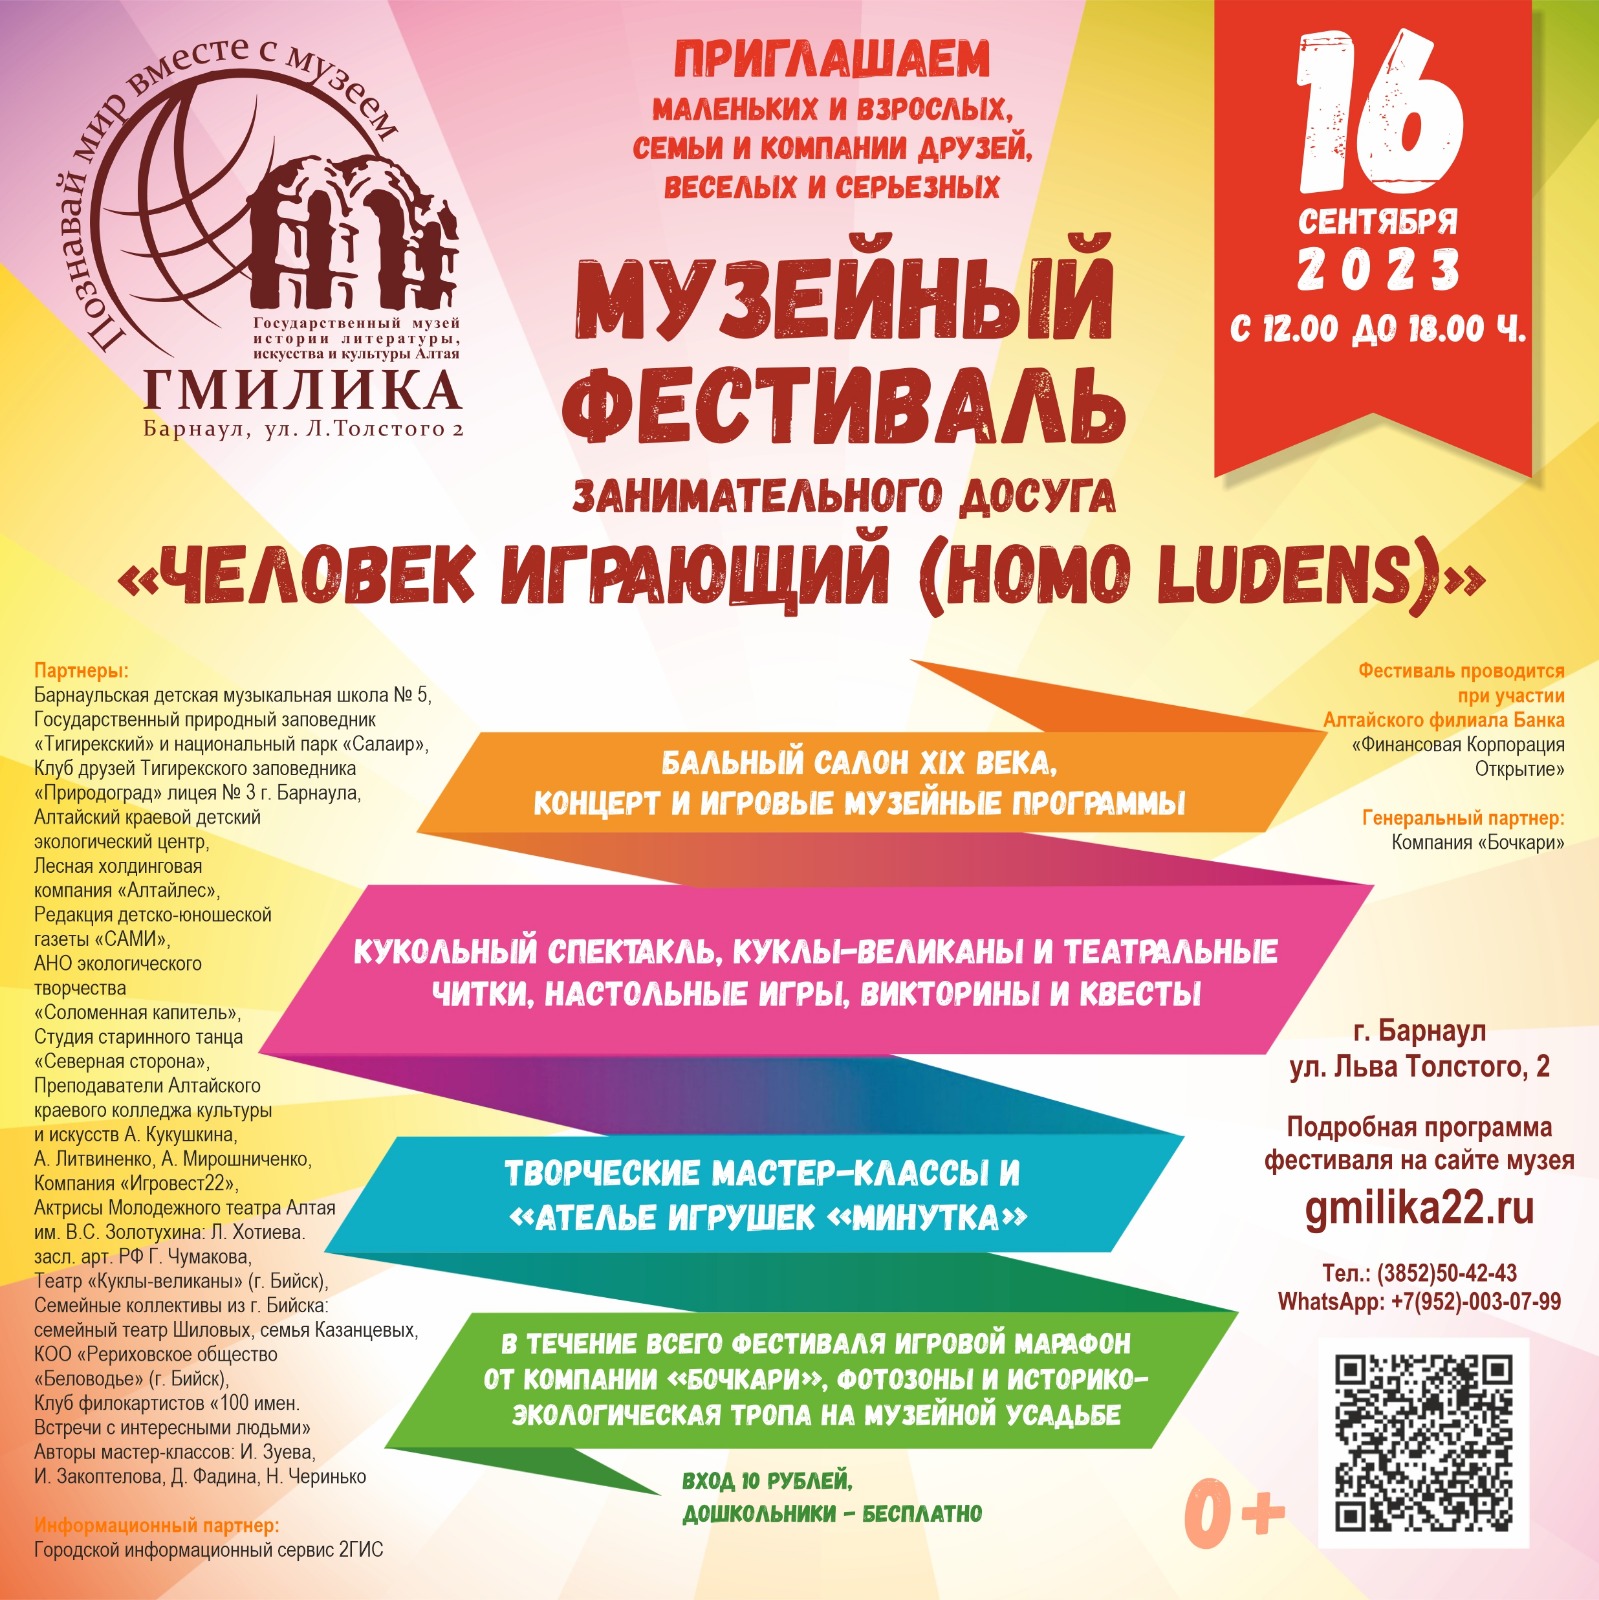 III Музейный фестиваль занимательного досуга пройдет в Барнауле 